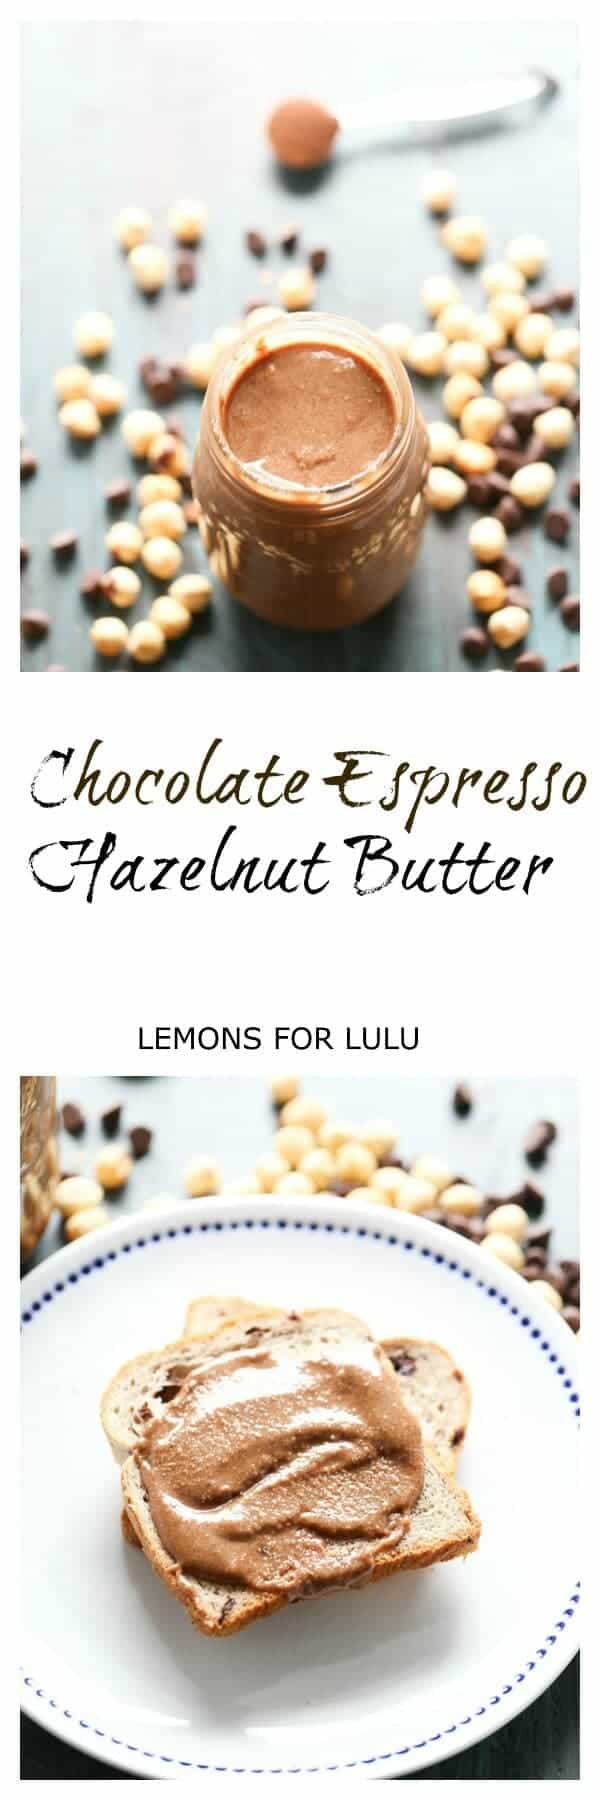 Chocolate and Espresso Easy Hazelnut Butter lemonsforlulu.com